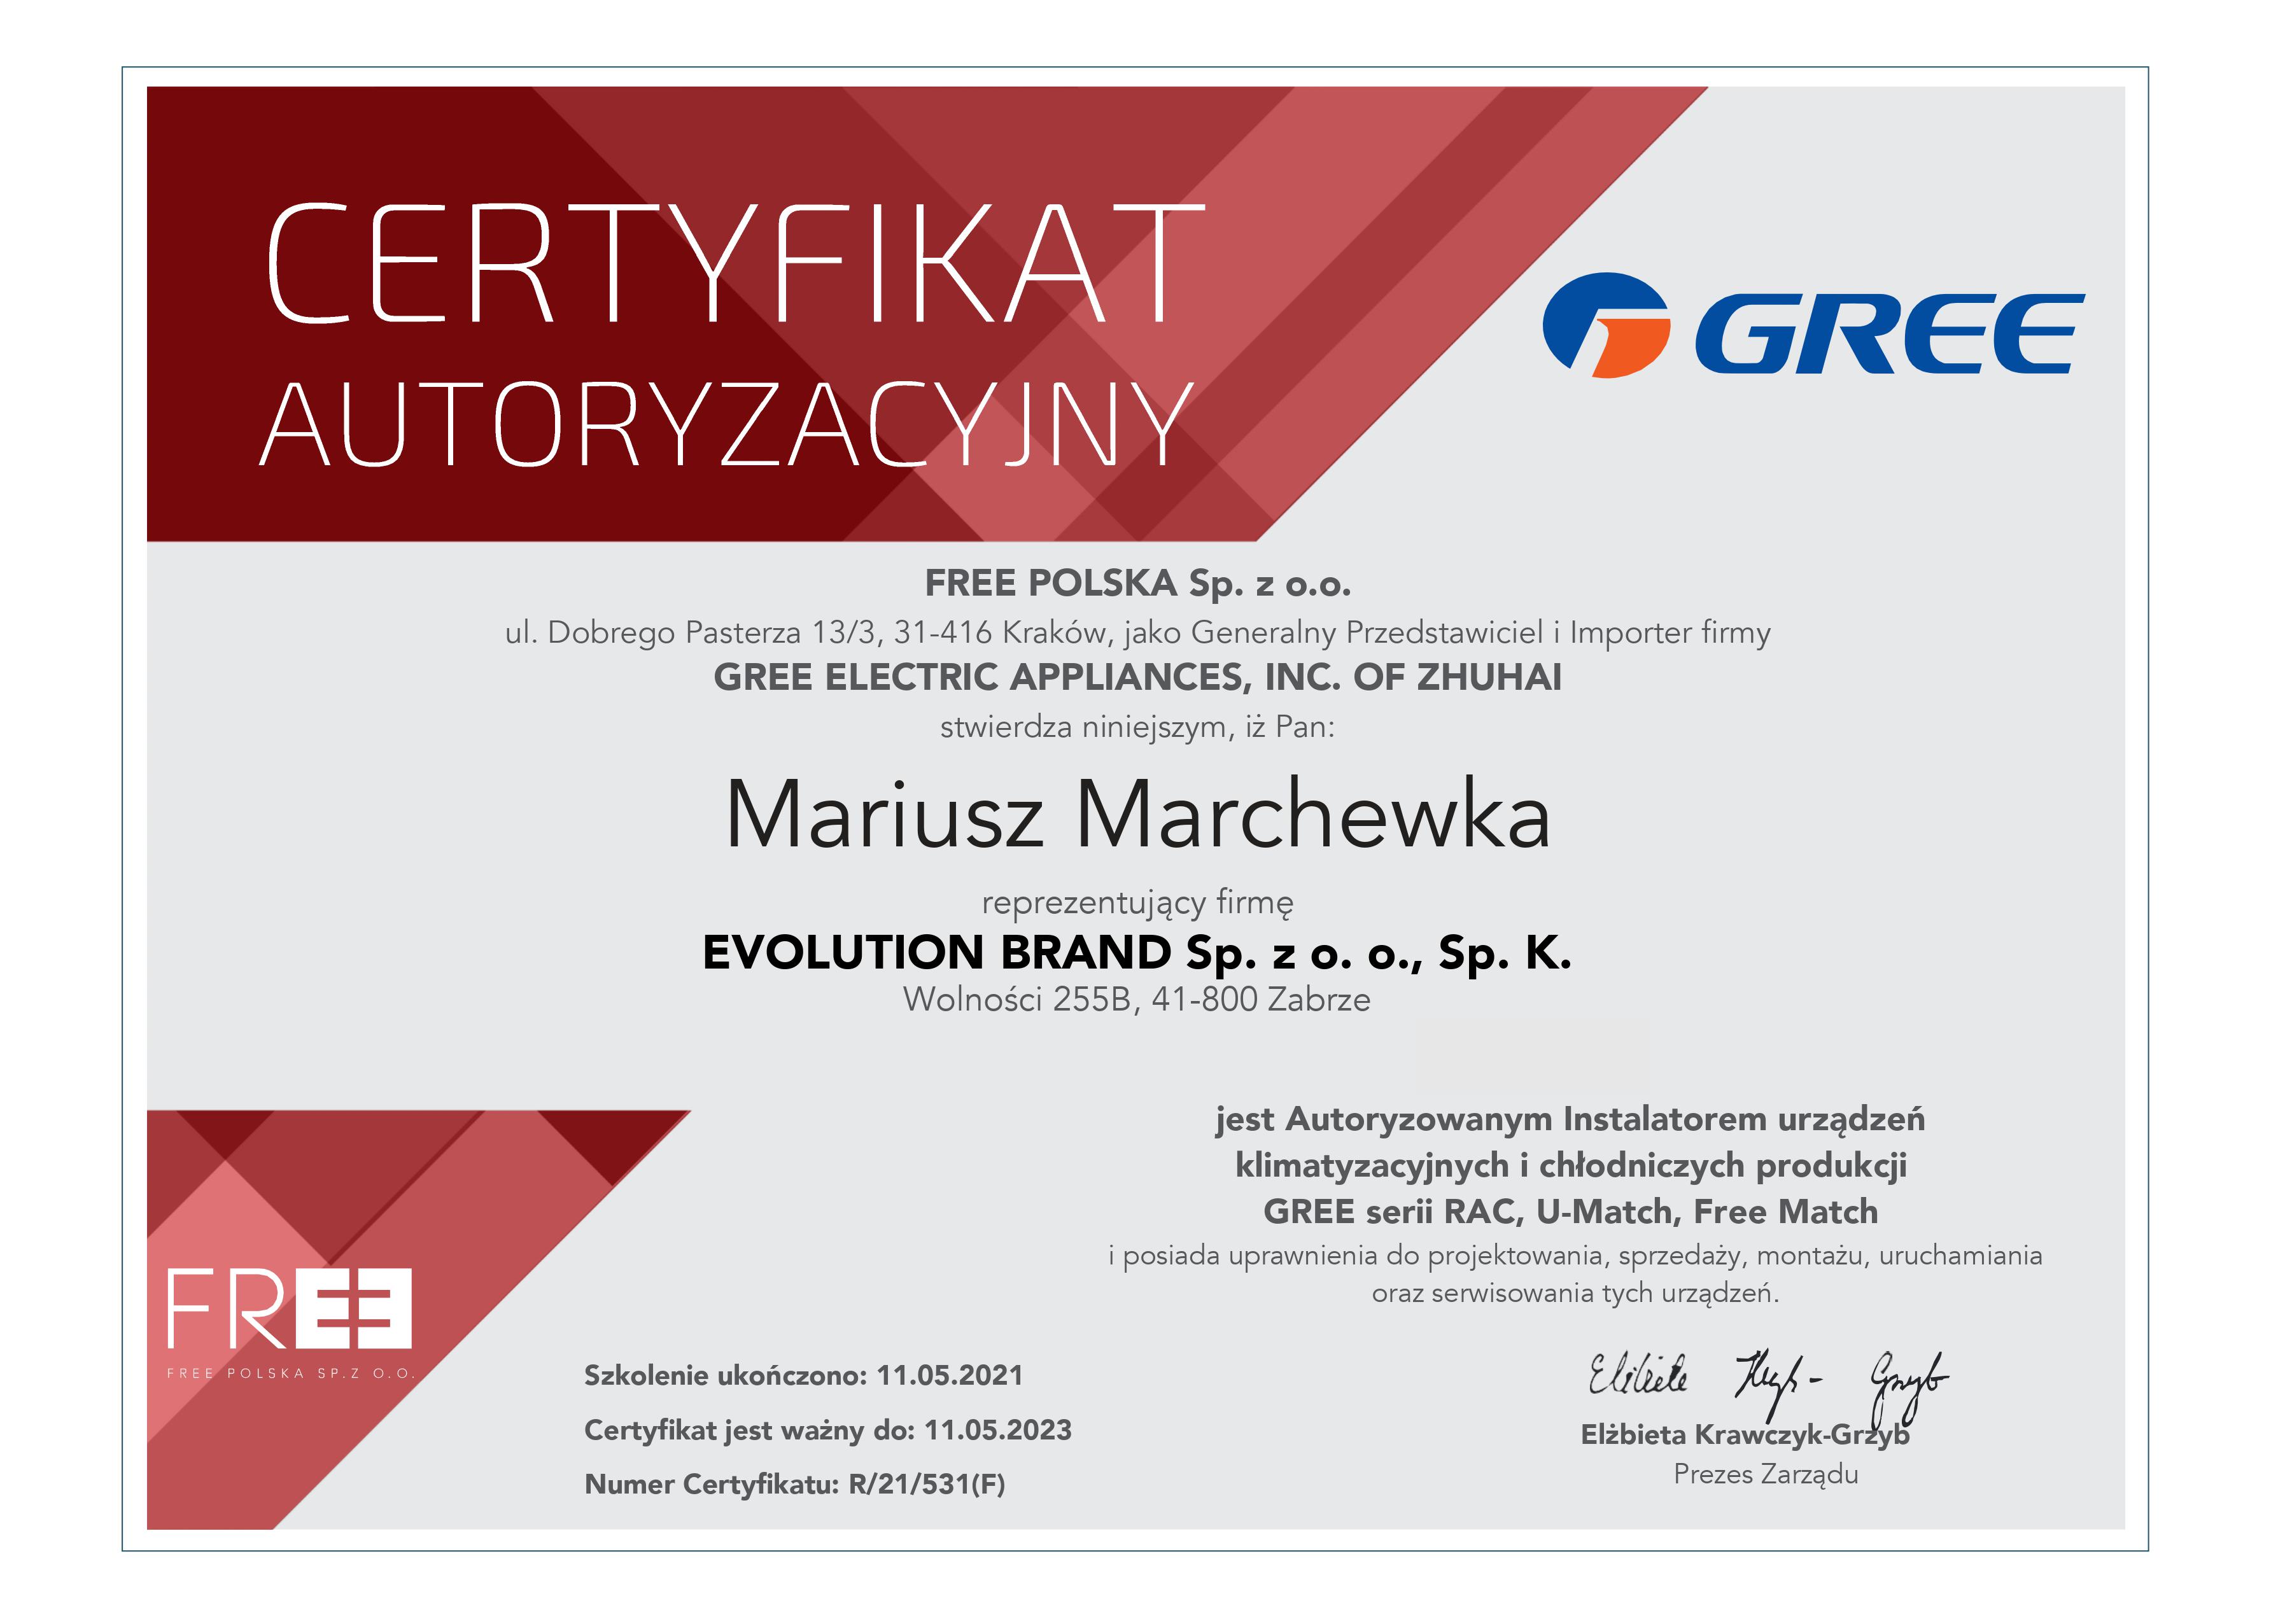 Certyfikat GREE 2021